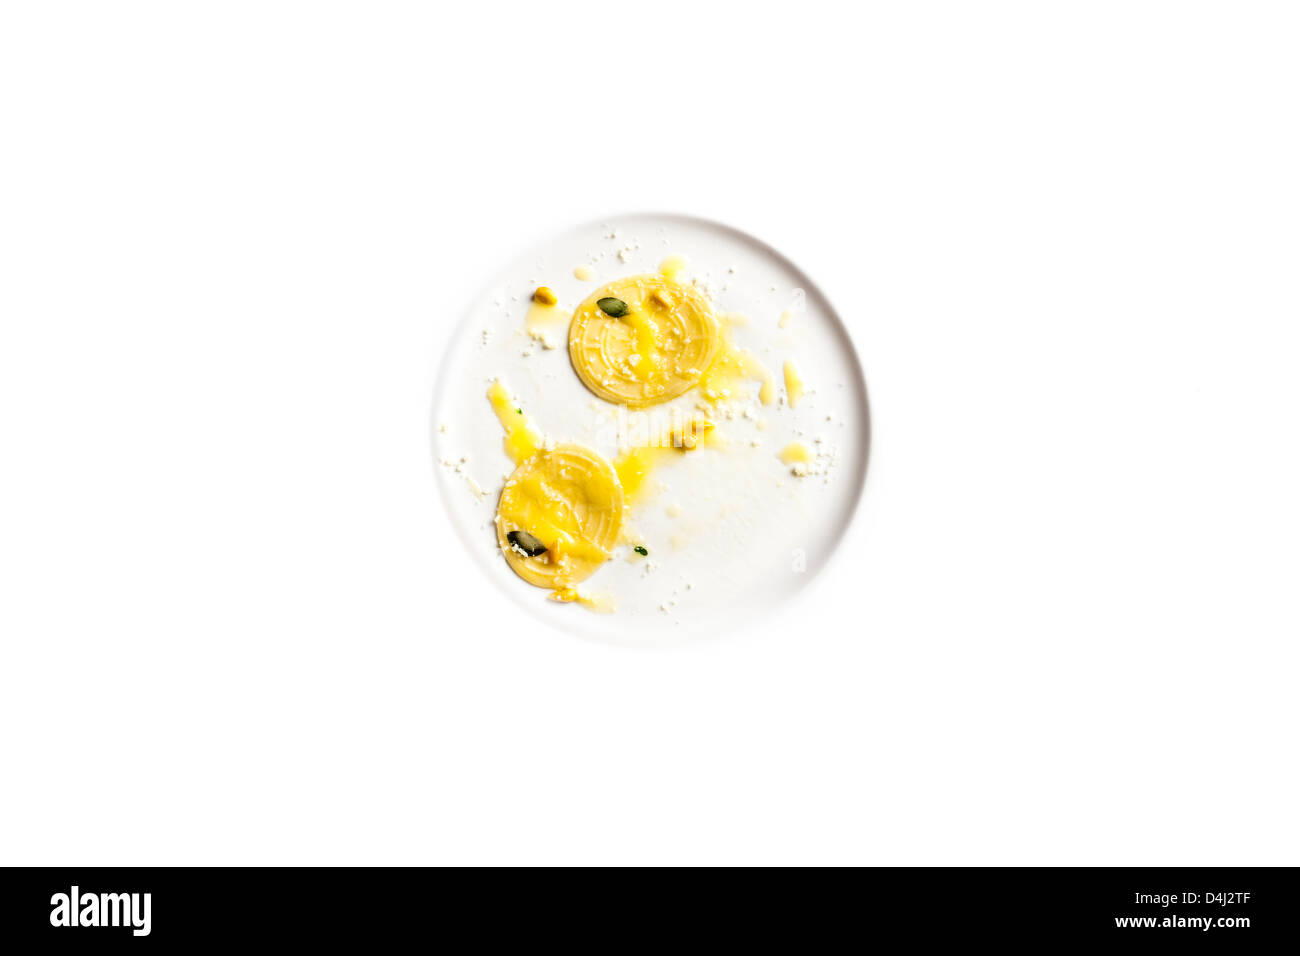 - Corzetti estampado pastas caseras de la región de Liguria (Italia servidos con mantequilla, mejorana y piñones tostados. Foto de stock